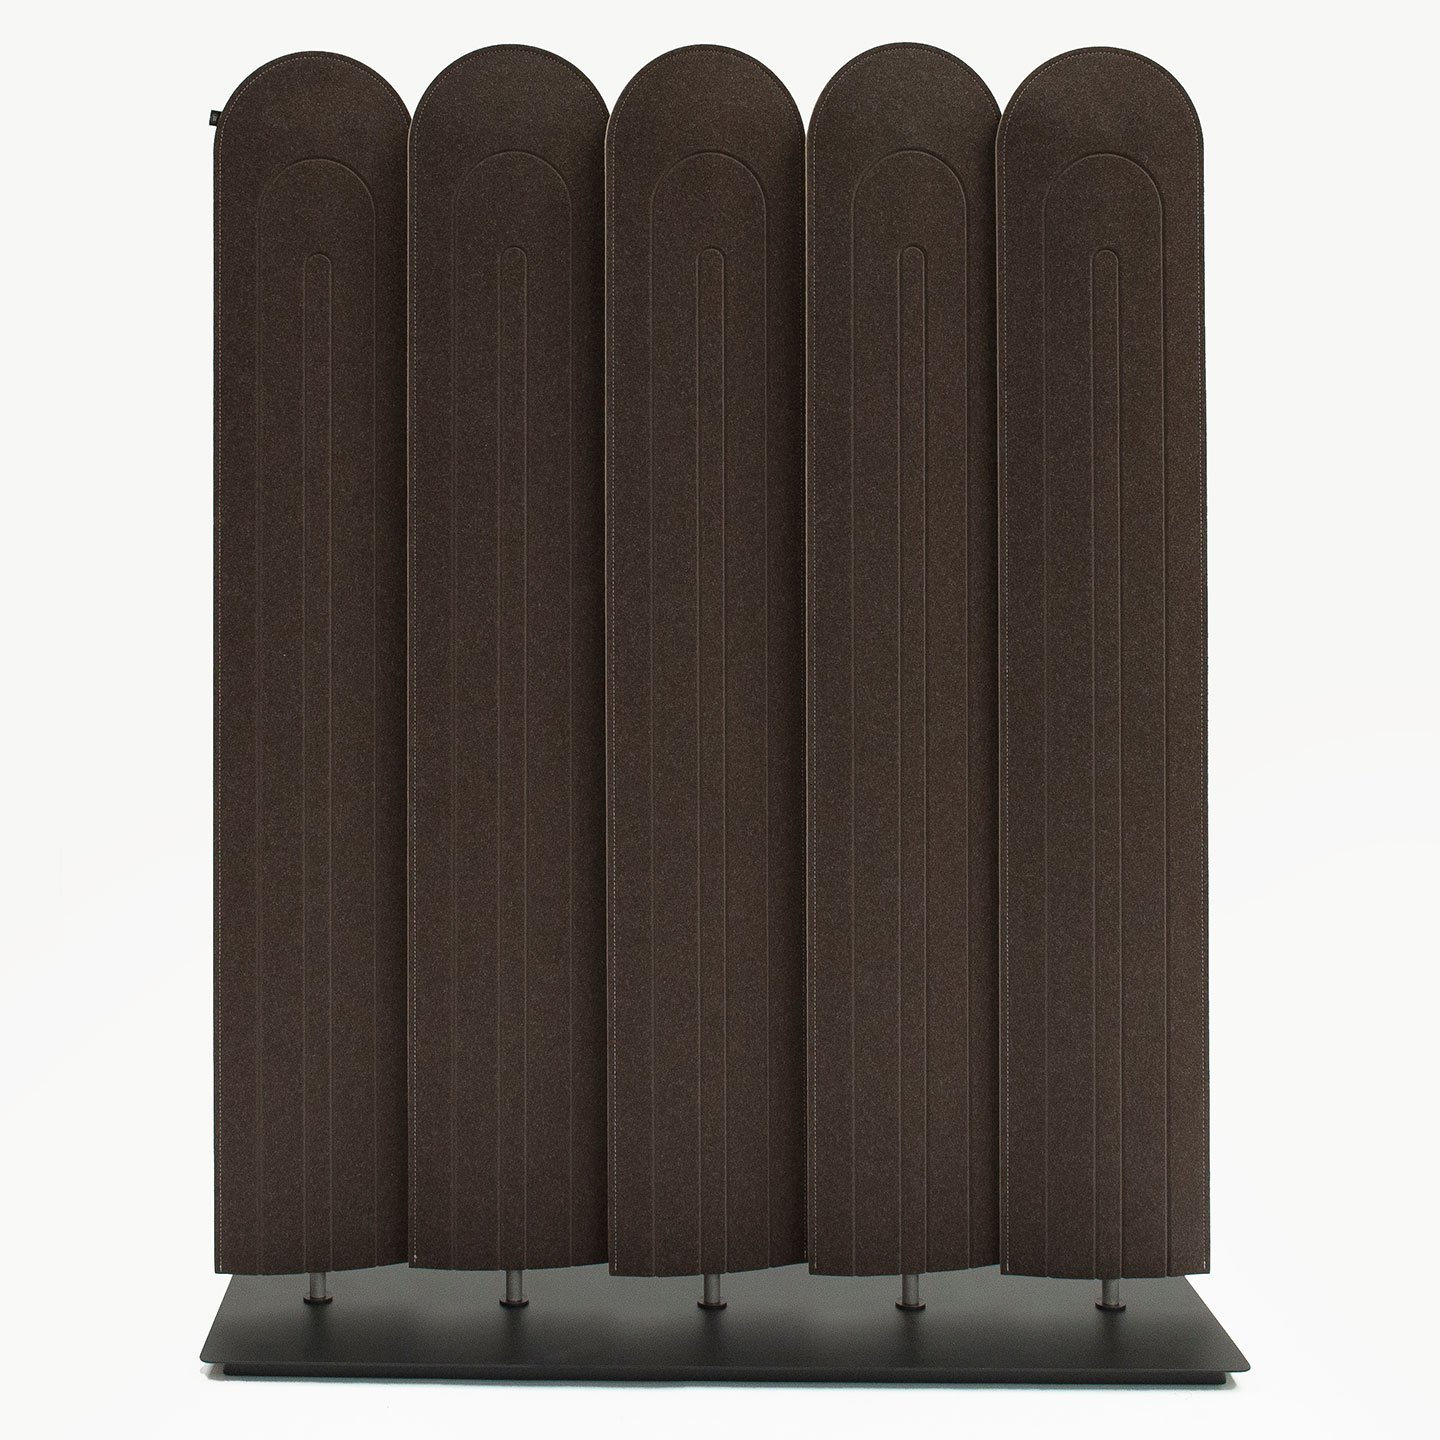 Haworth Buzziblind screens in brown color on steel base